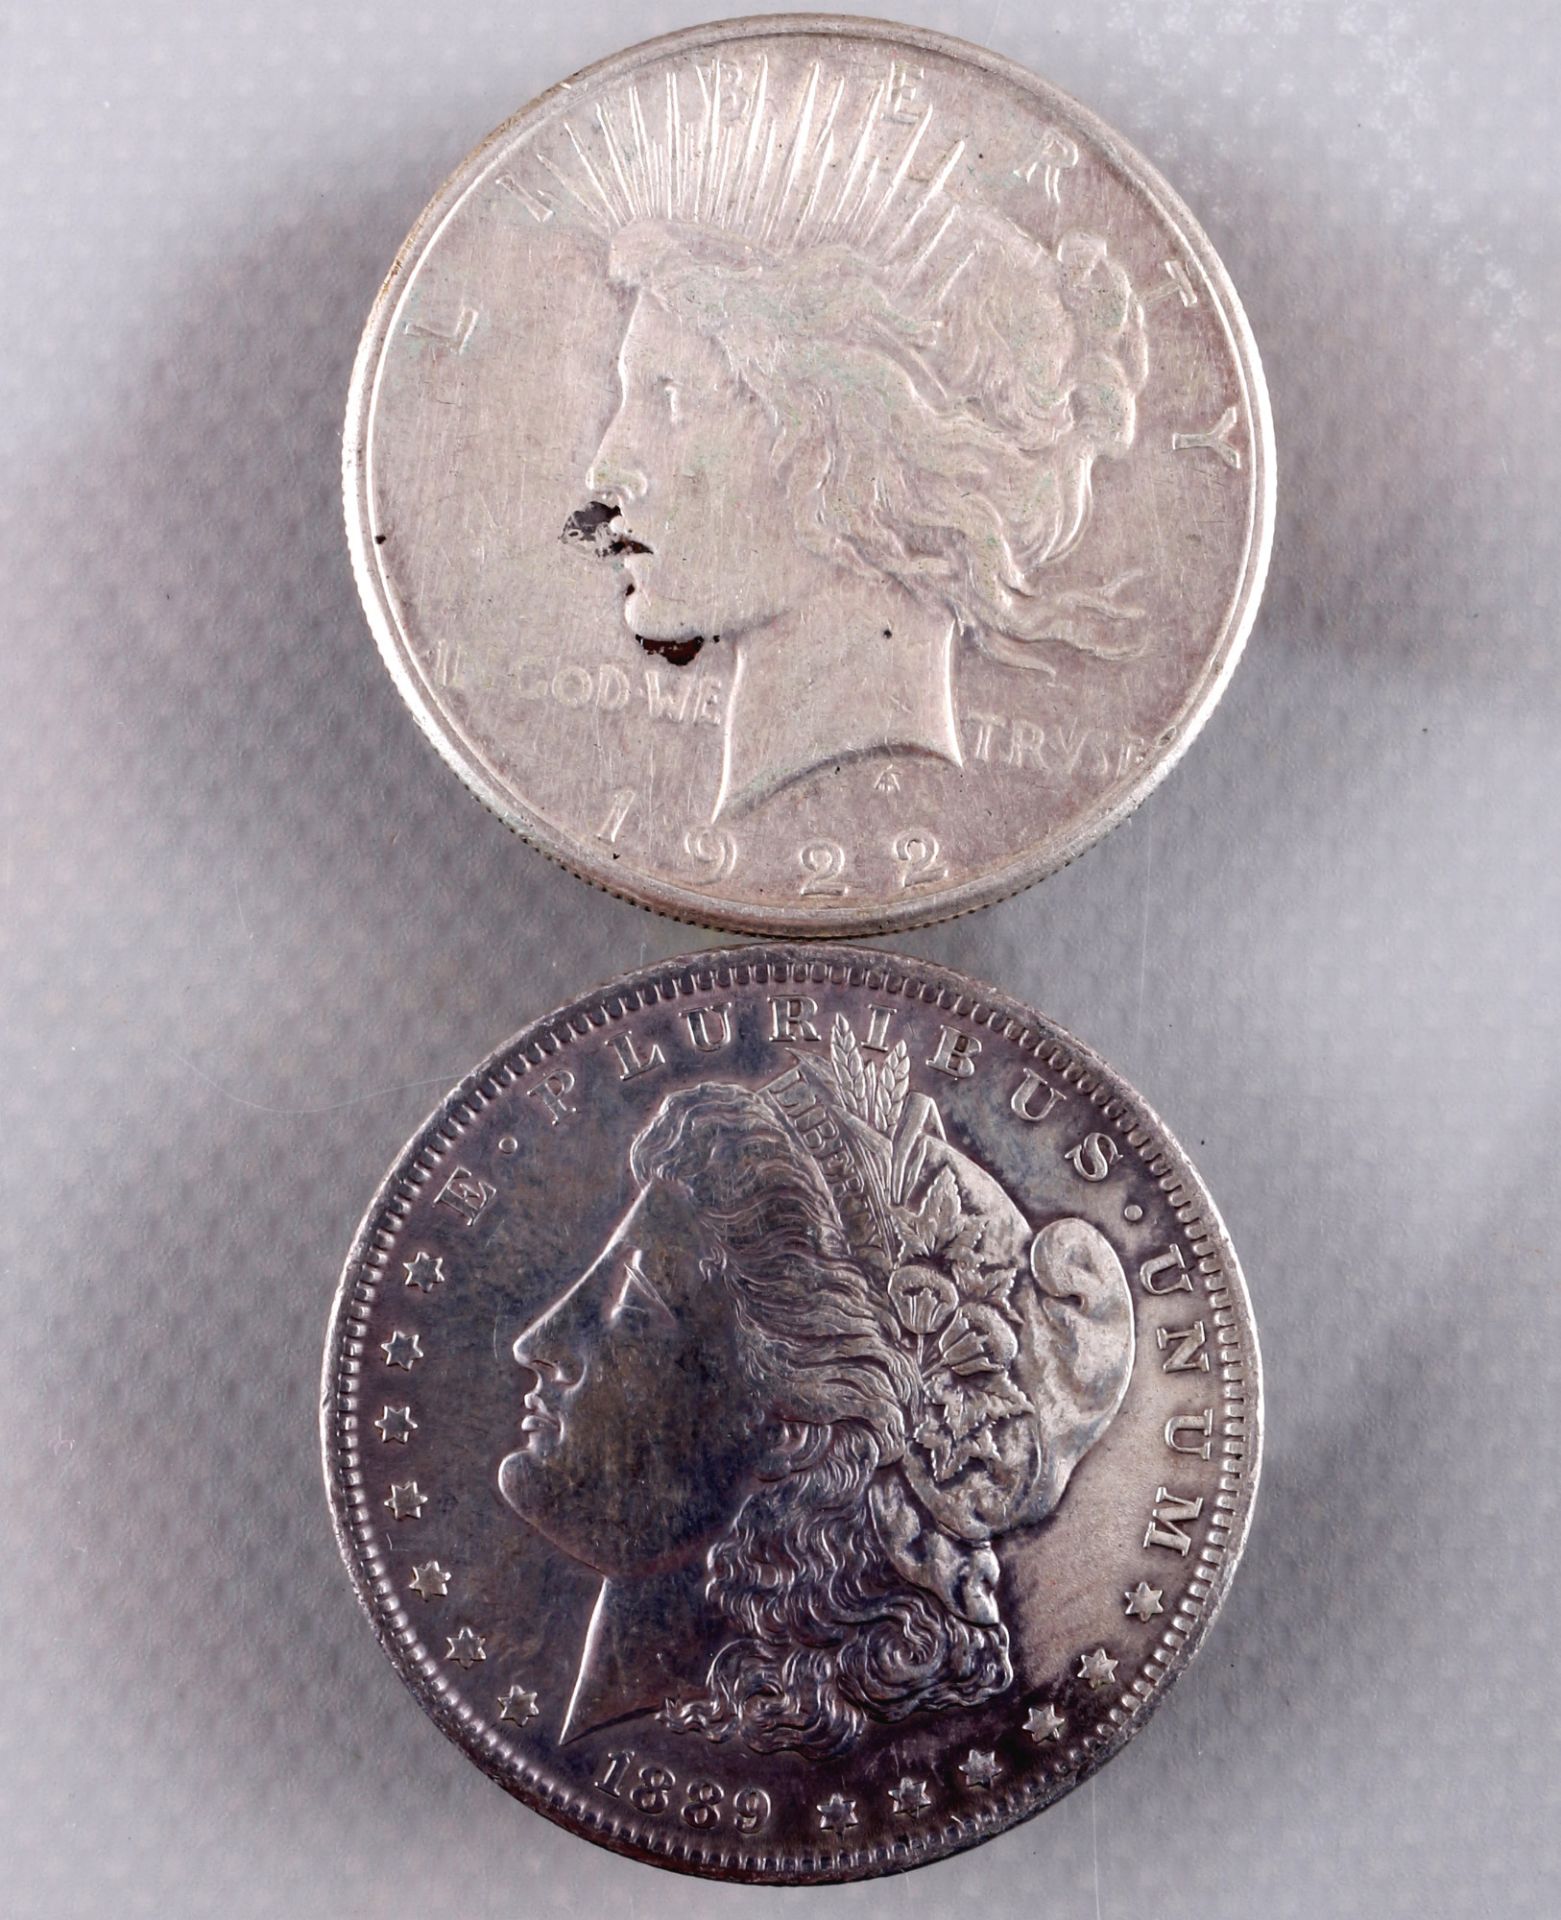 6 silver coins - Morgan Dollar 1882 - 1922, Silbermünzen - Morgan Dollar 1882 - 1922, - Image 2 of 5